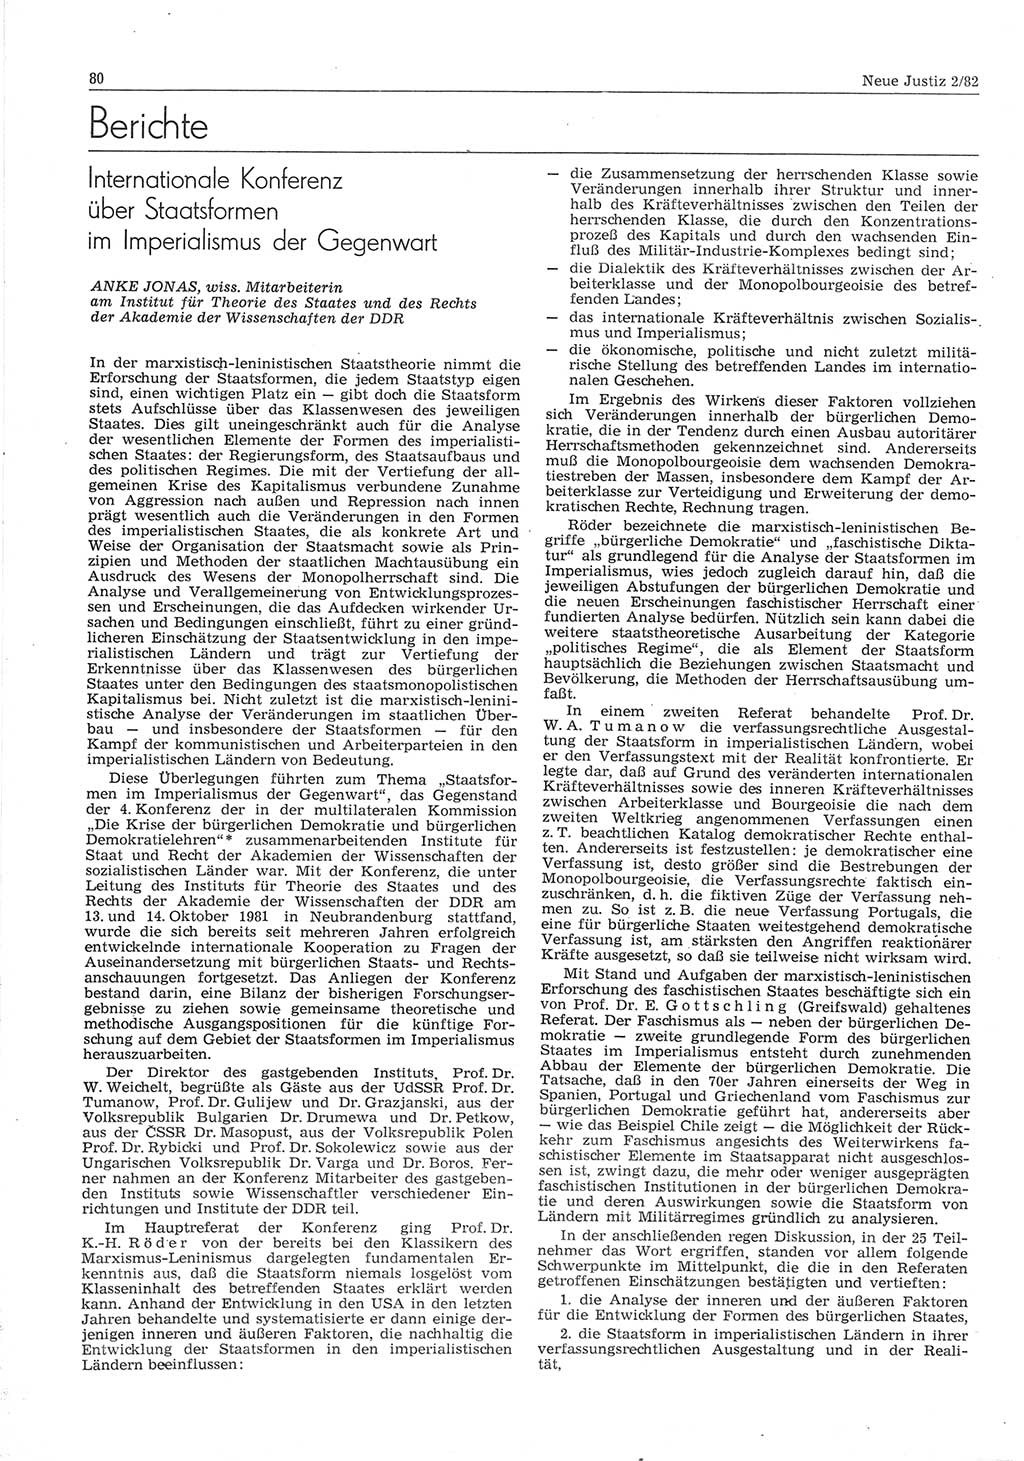 Neue Justiz (NJ), Zeitschrift für sozialistisches Recht und Gesetzlichkeit [Deutsche Demokratische Republik (DDR)], 36. Jahrgang 1982, Seite 80 (NJ DDR 1982, S. 80)